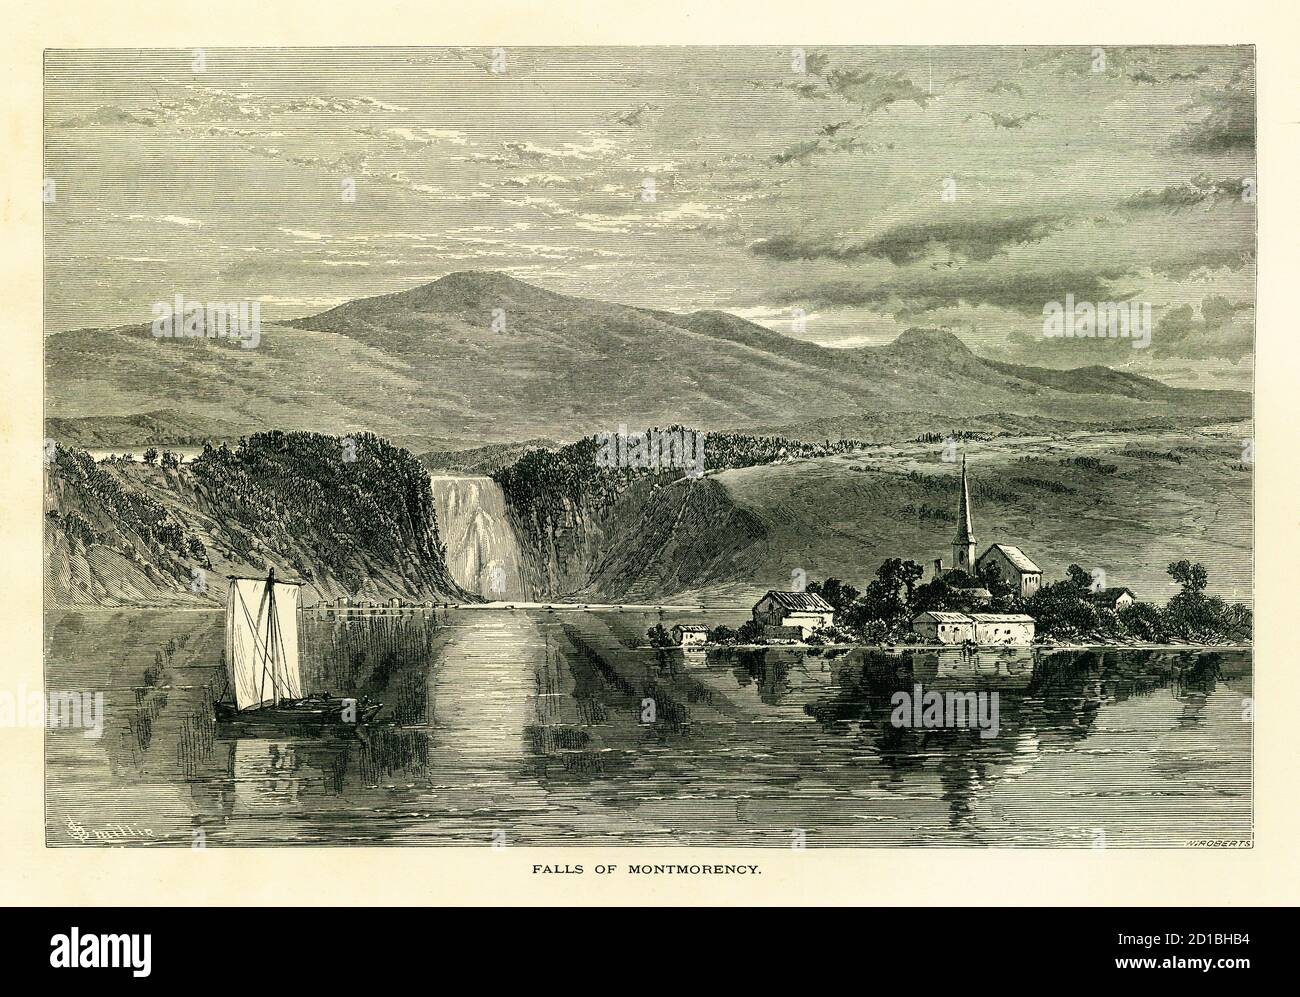 Stich aus dem 19. Jahrhundert von Montmorency Falls am Montmorency River in Quebec, Kanada. Illustration veröffentlicht im malerischen Amerika oder das Land We L Stockfoto